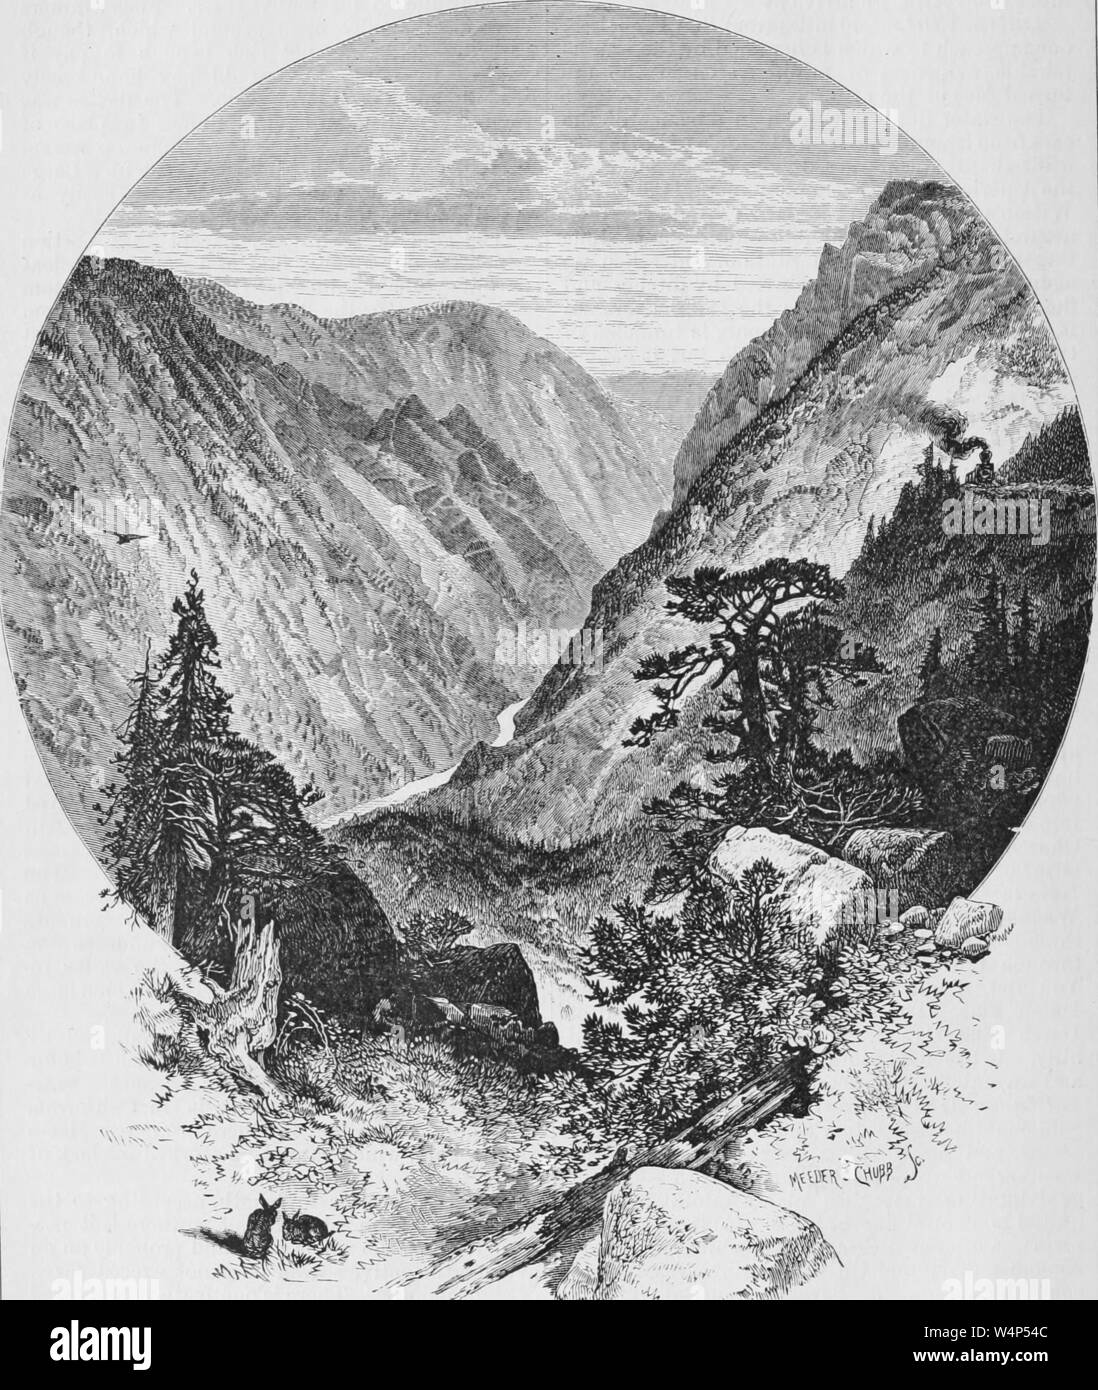 Gravure de l'écart du géant dans l'American River Canyon, du livre 'Le Pacific tourist' par Henry T. Williams, 1878. Avec la permission de Internet Archive. () Banque D'Images